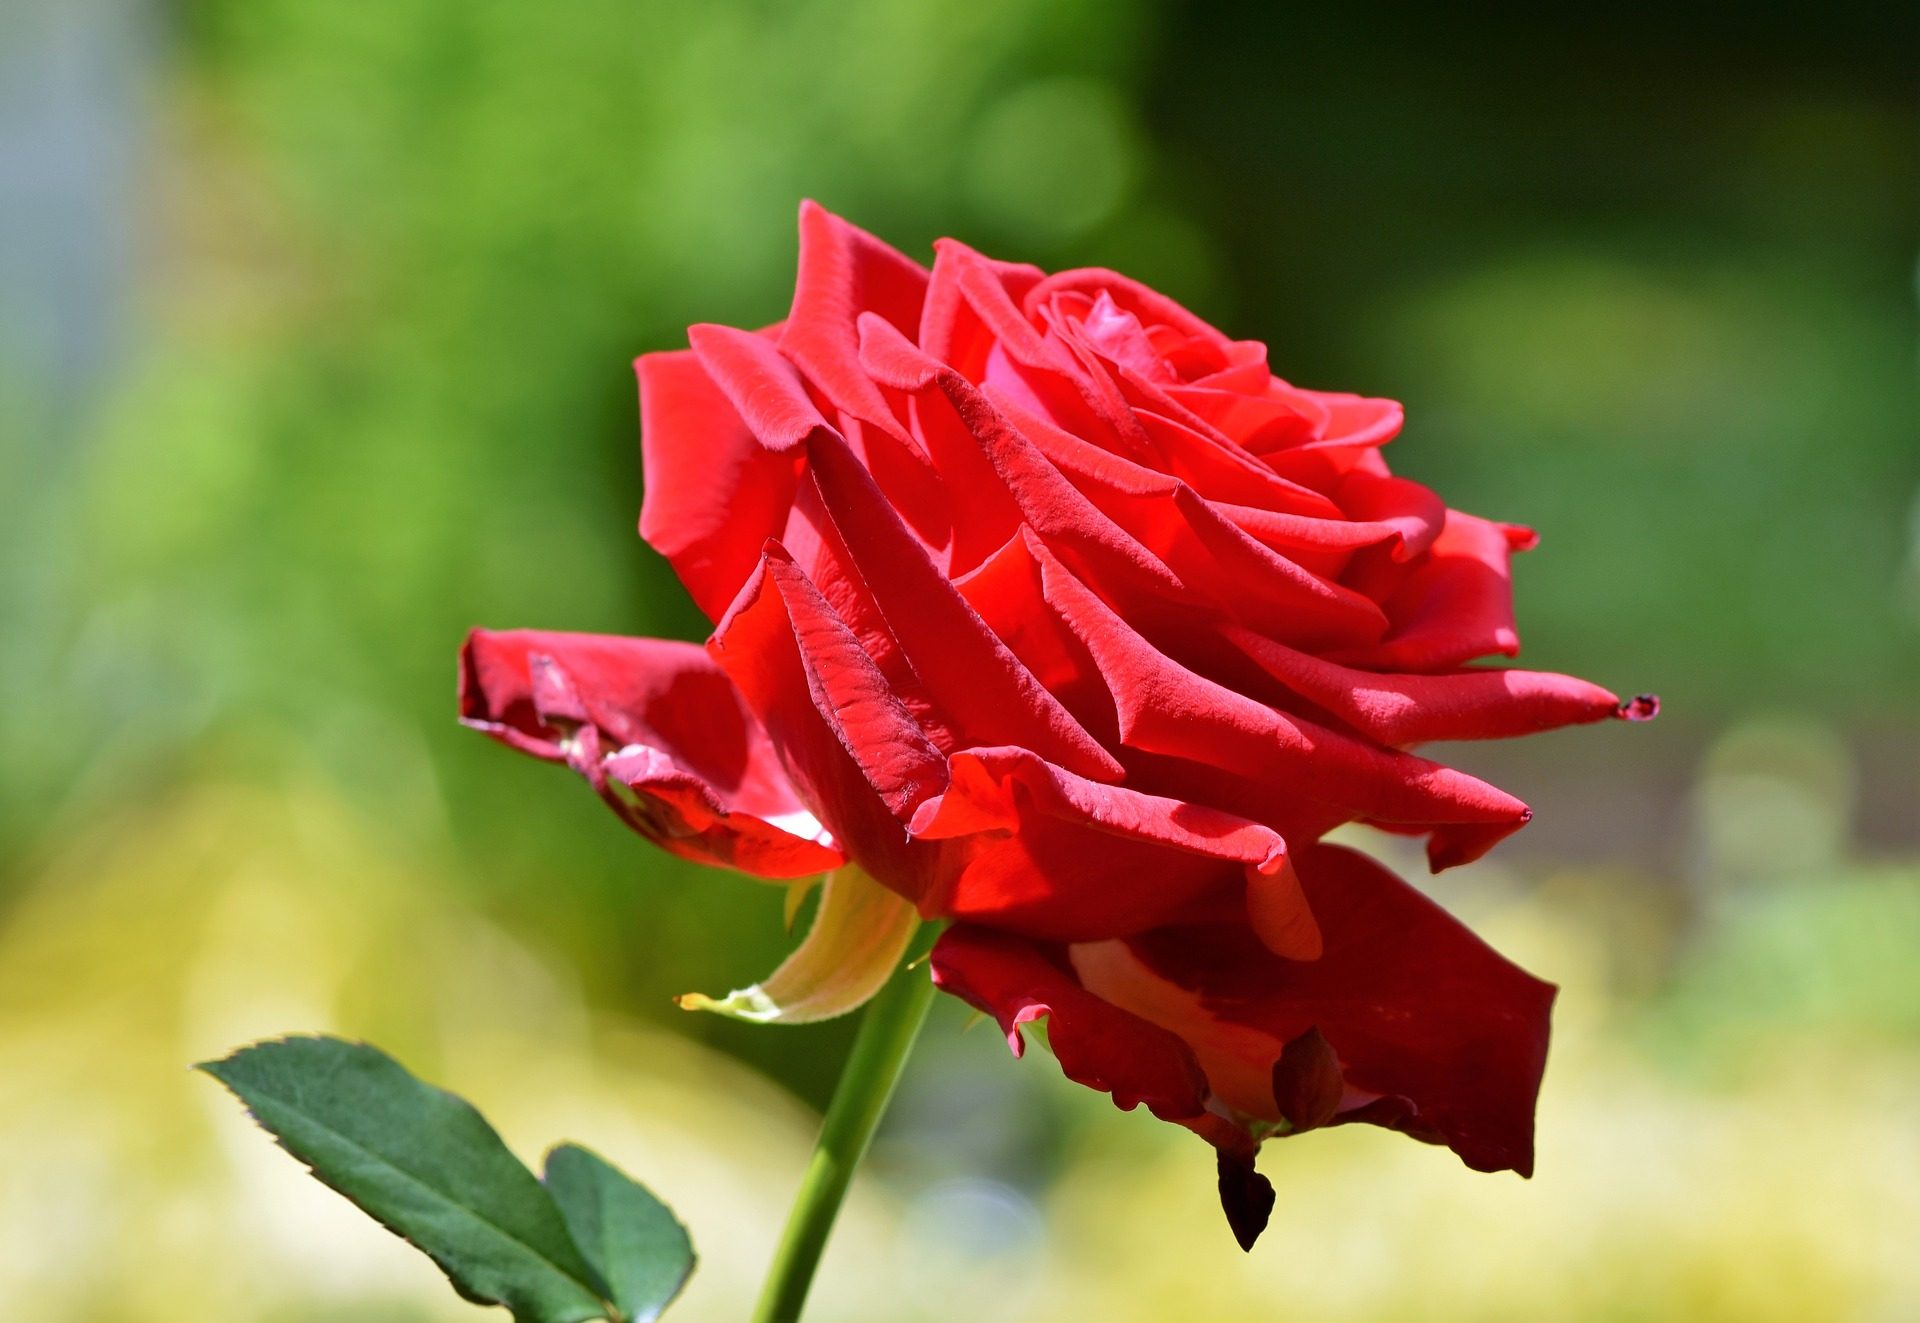 Best Cute Single Red Rose Flower Wallpaper Resolution - Cute Red Rose Flower - HD Wallpaper 